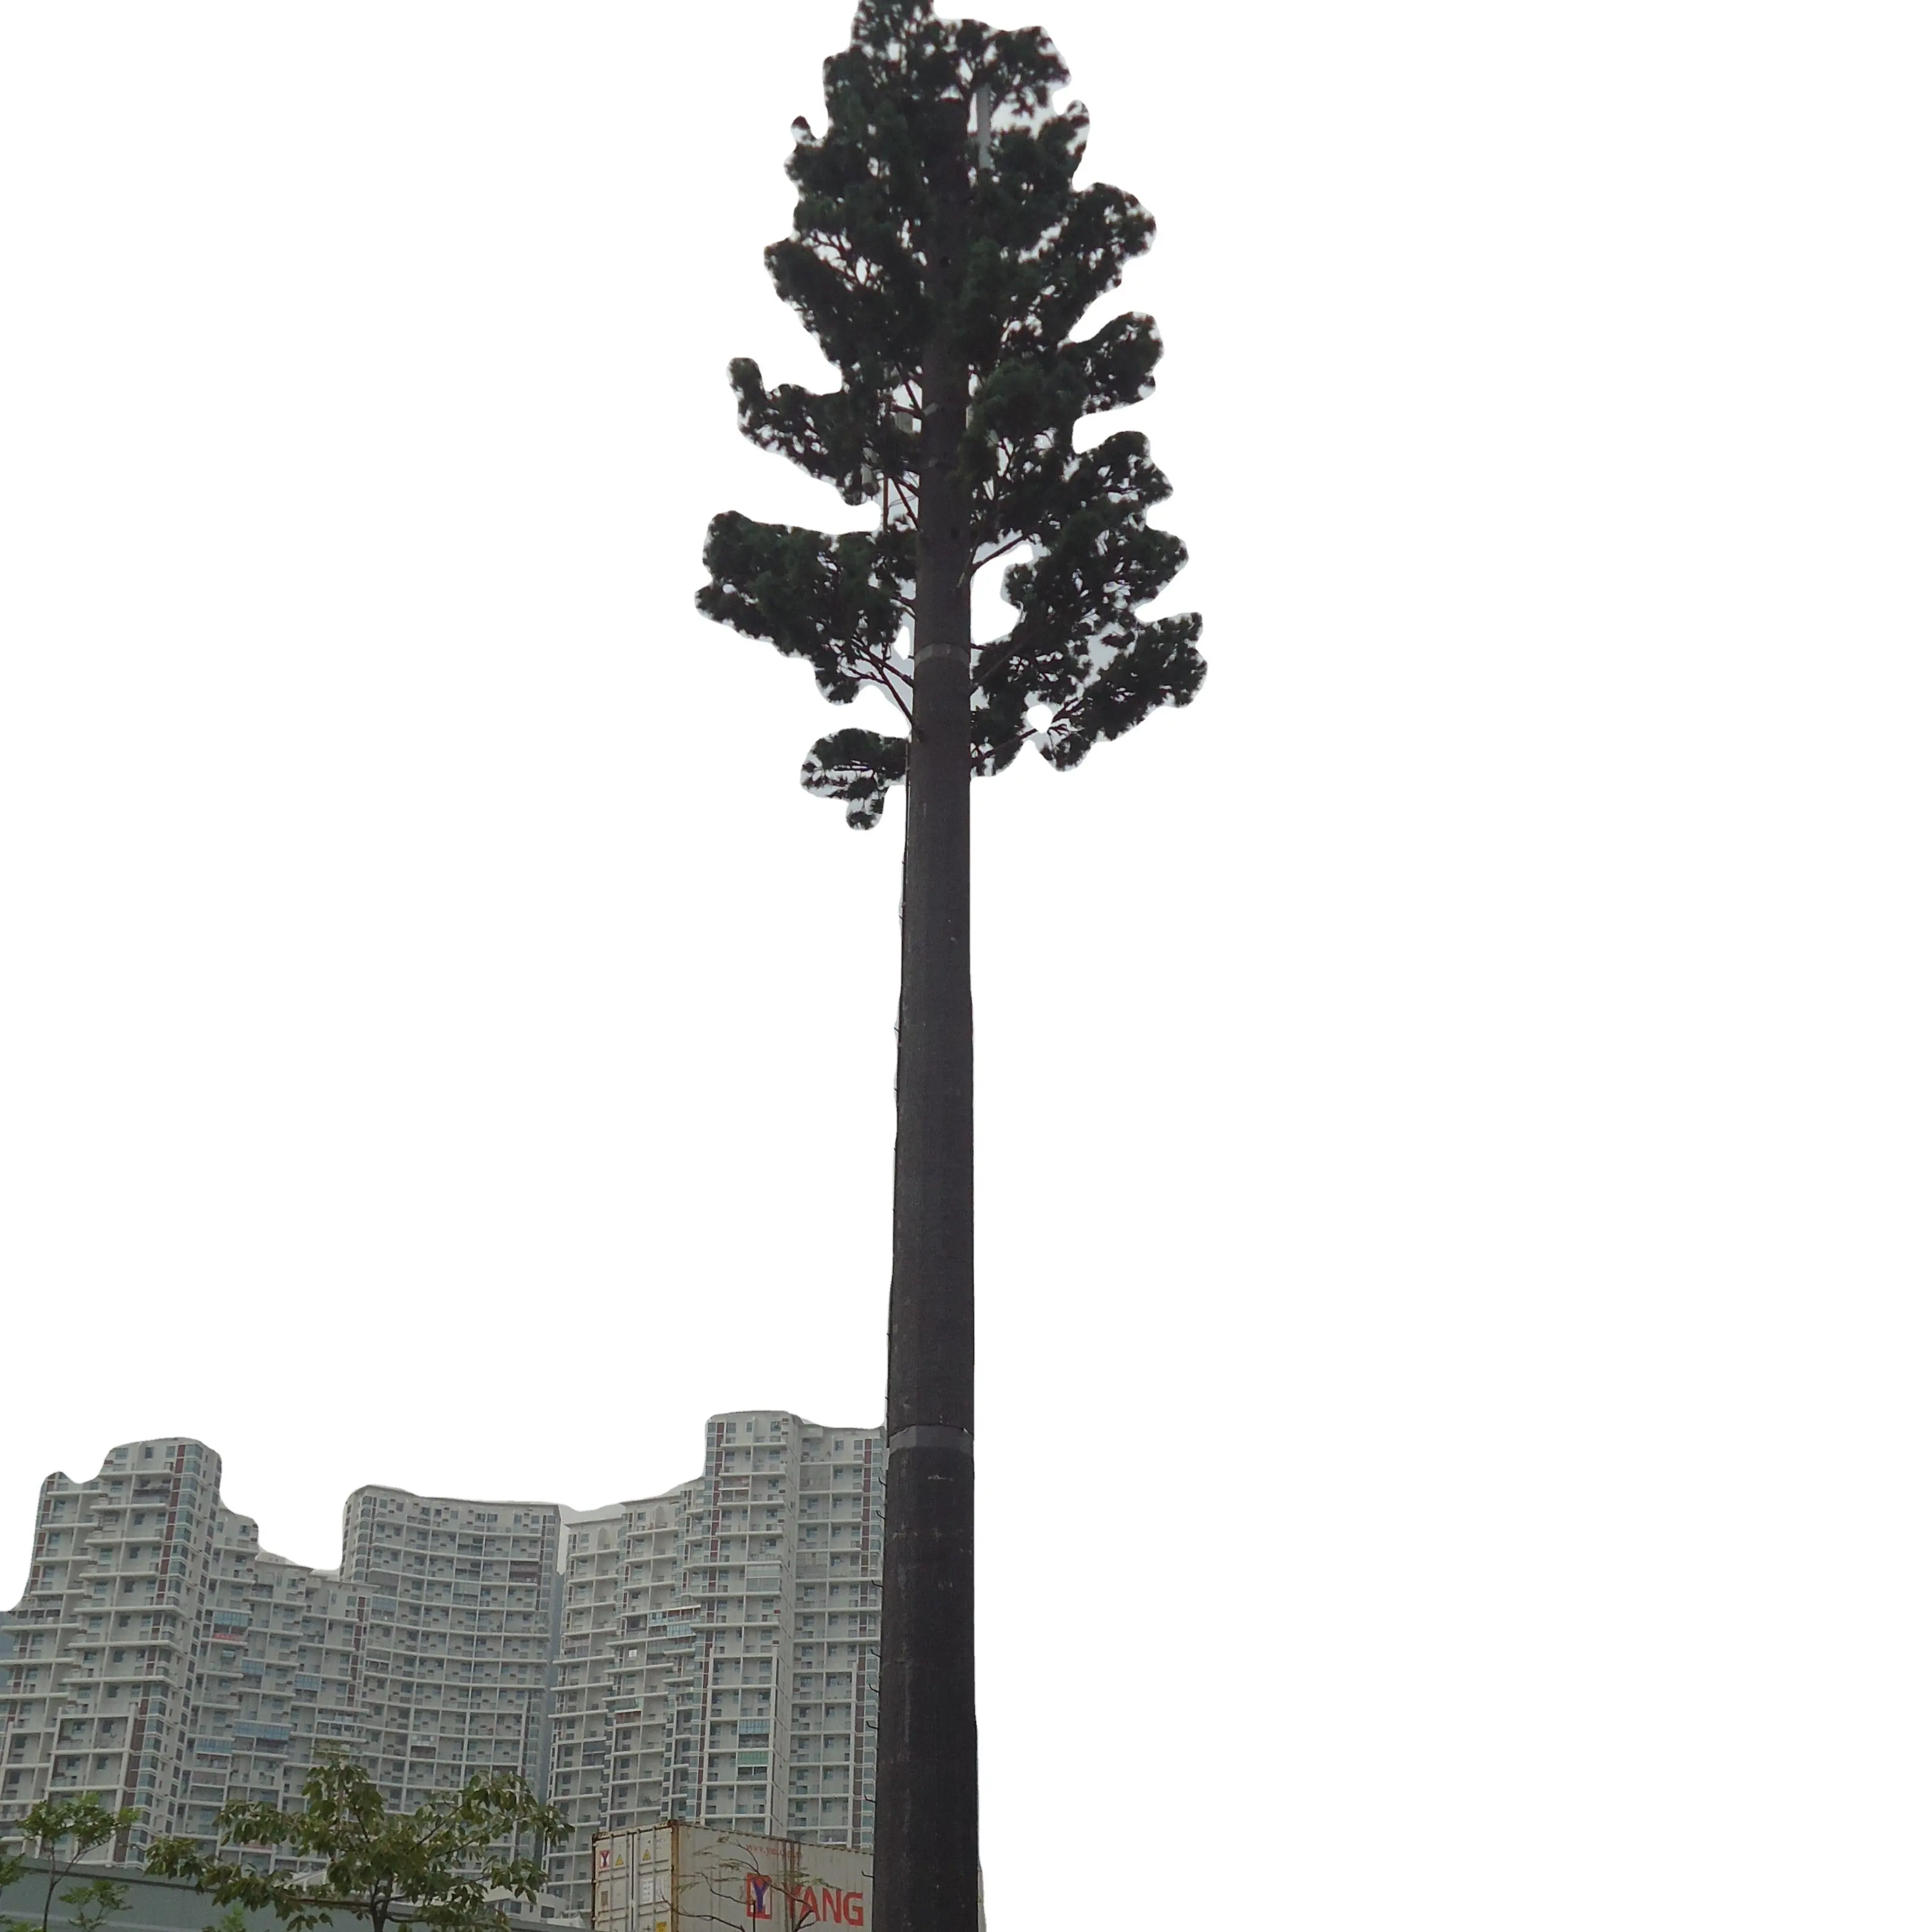 Torre monopolo de árbol de pino, Telecom, camuflada, 40m